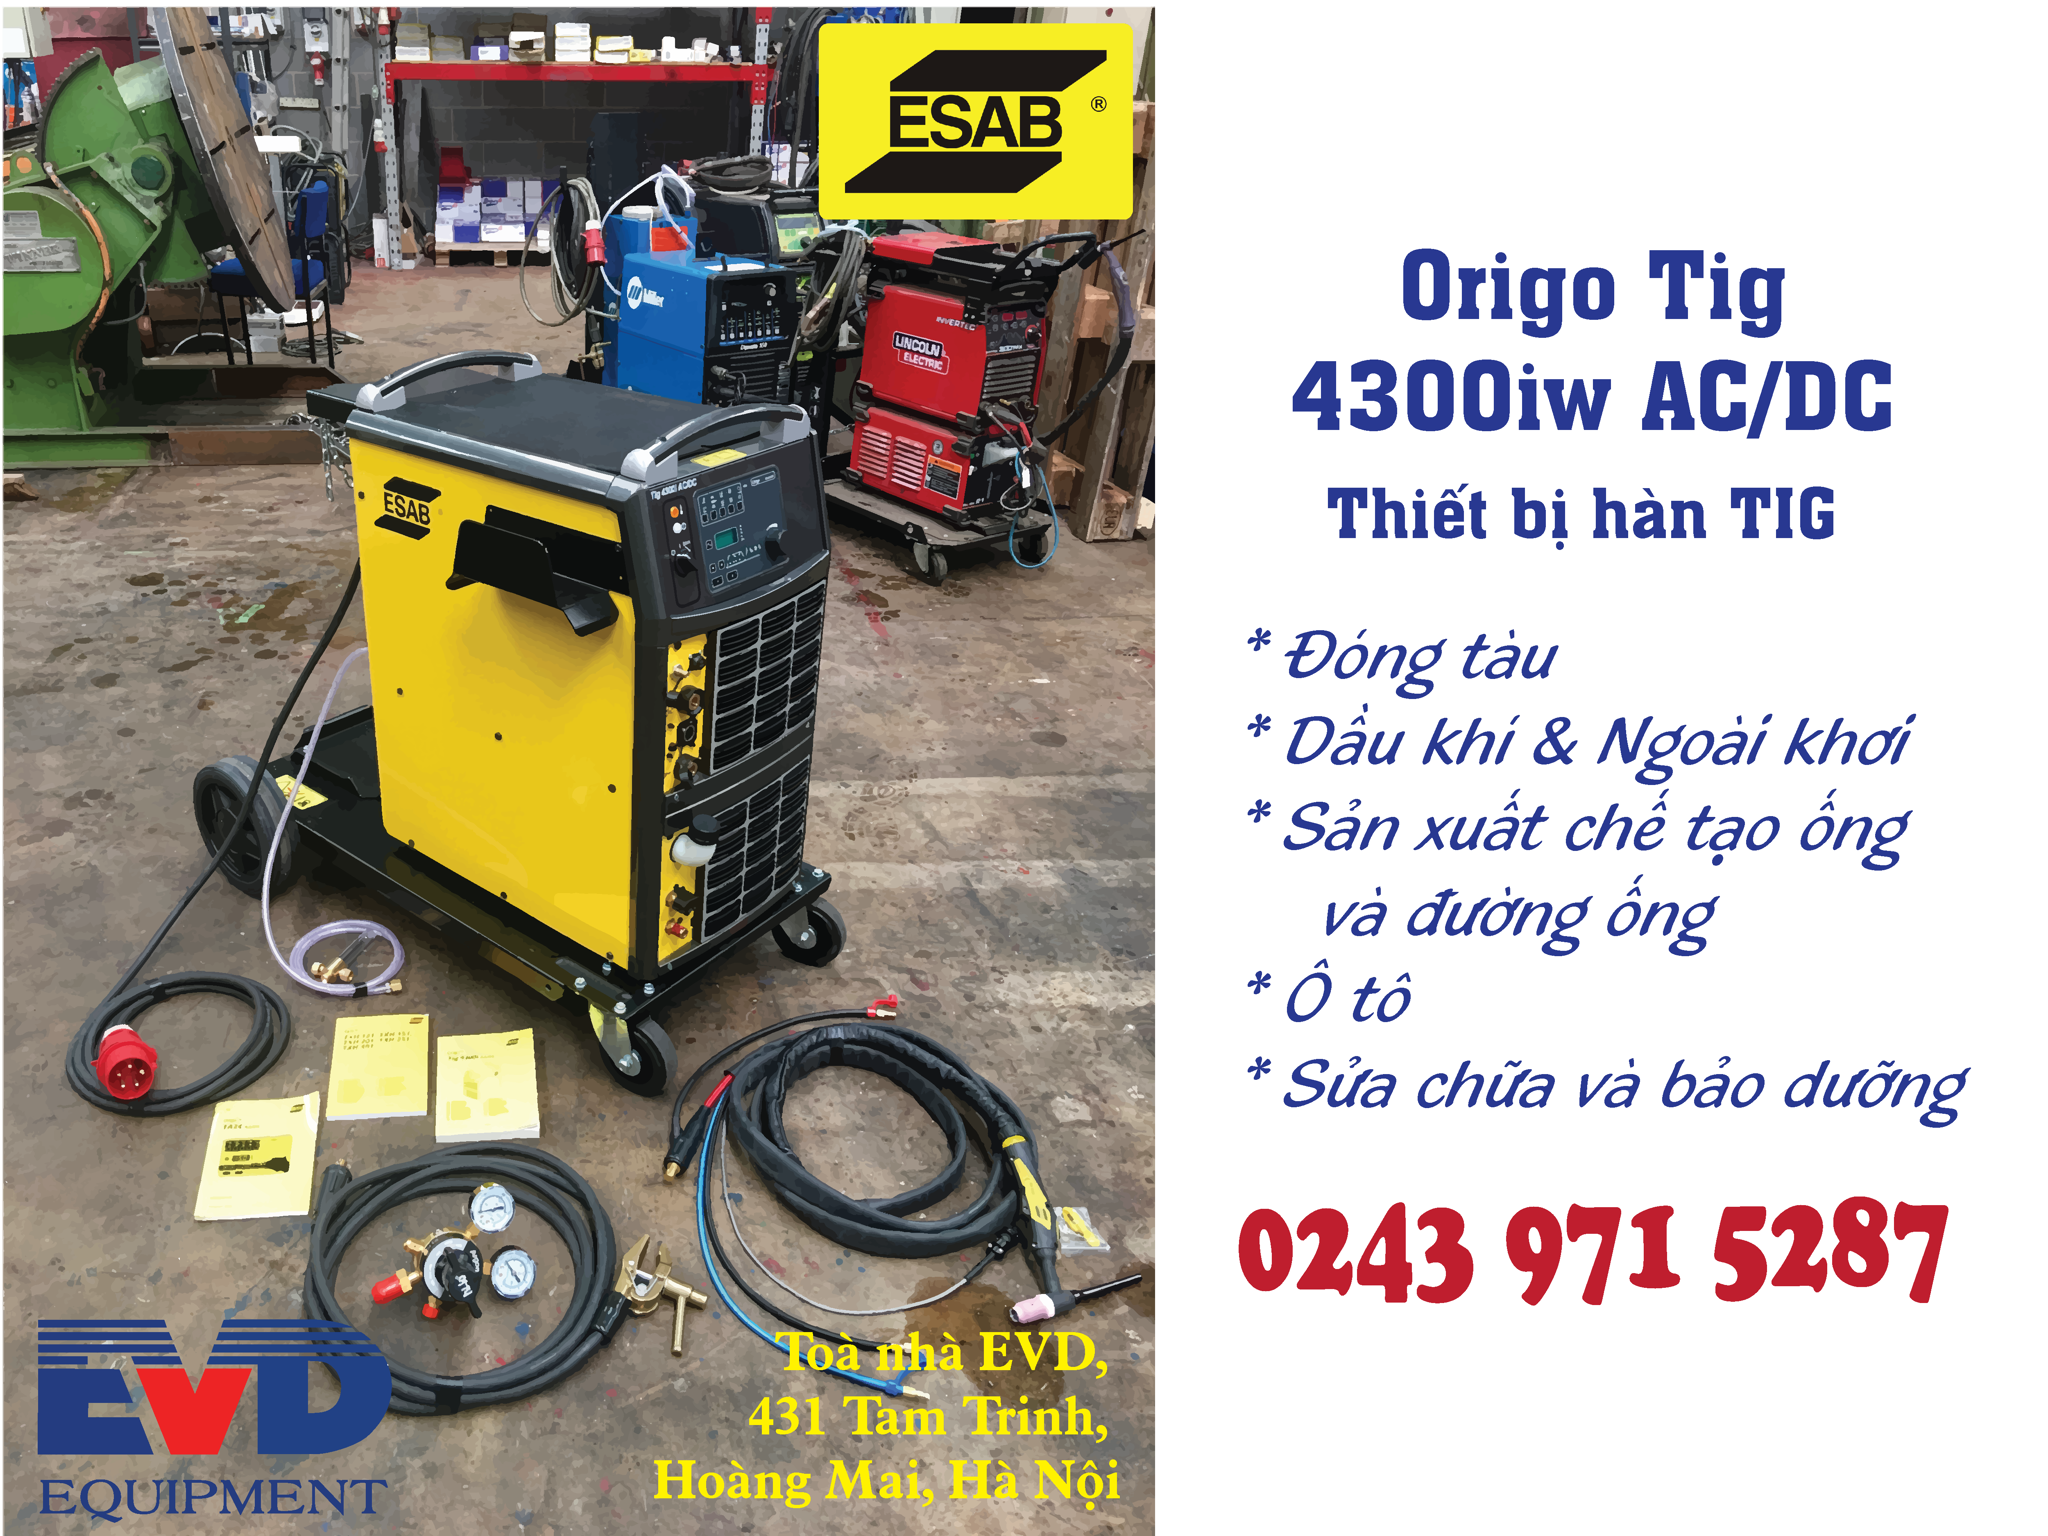 Origo Tig 4300iw AC/DC - Hàn được tất cả các loại que hàn vỏ bọc rutil, bazơ thậm chí cả xenlulo